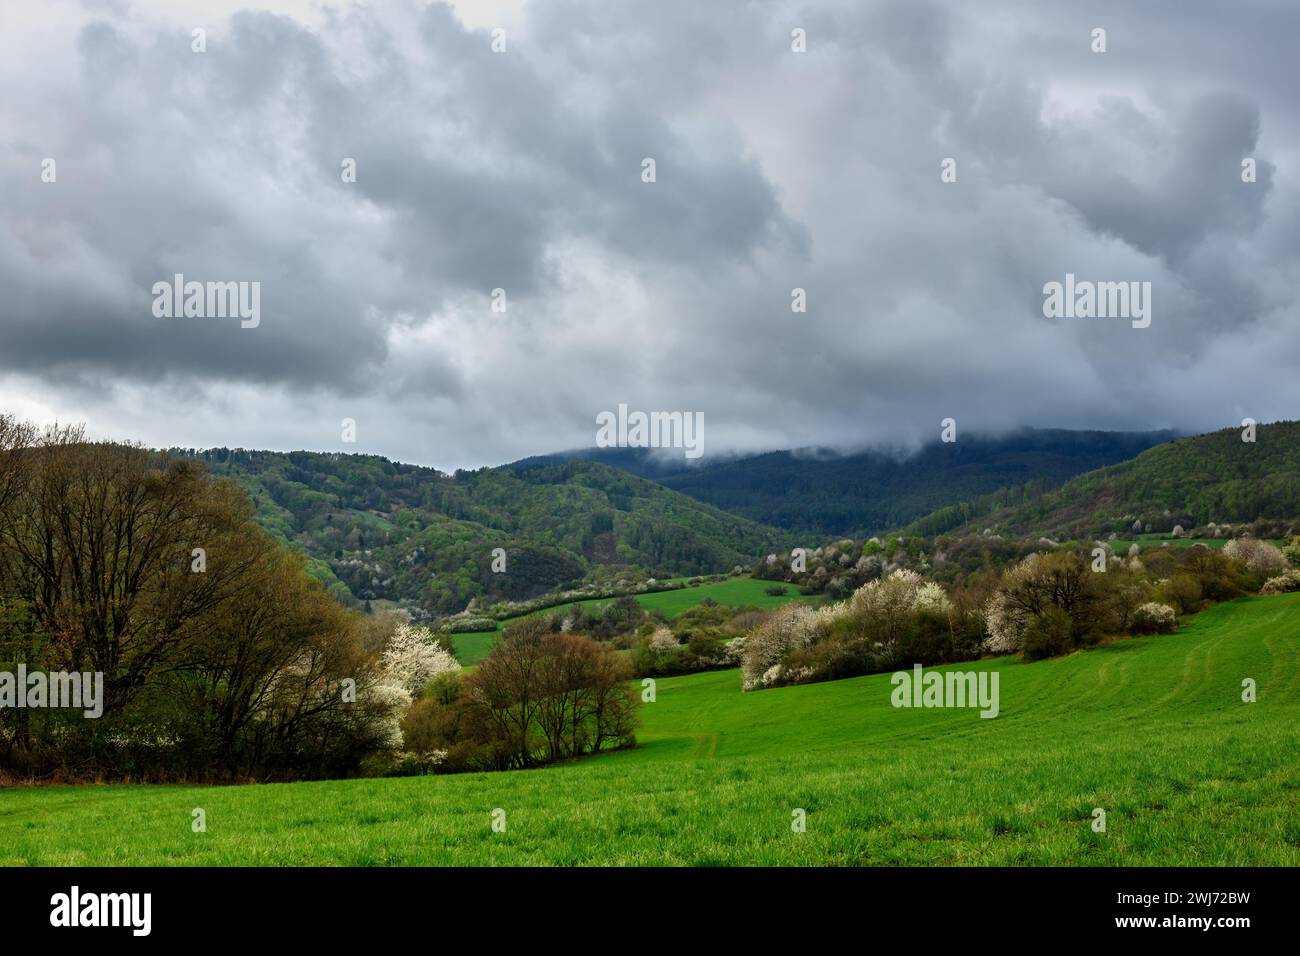 Paysage de montagne printanier après la pluie. Avec le ciel cludy et les nuages gris.eau s'évaporant de la forêt. Herbe fraîche. Fleurs d'arbres Vrsatec, Slovaquie Banque D'Images